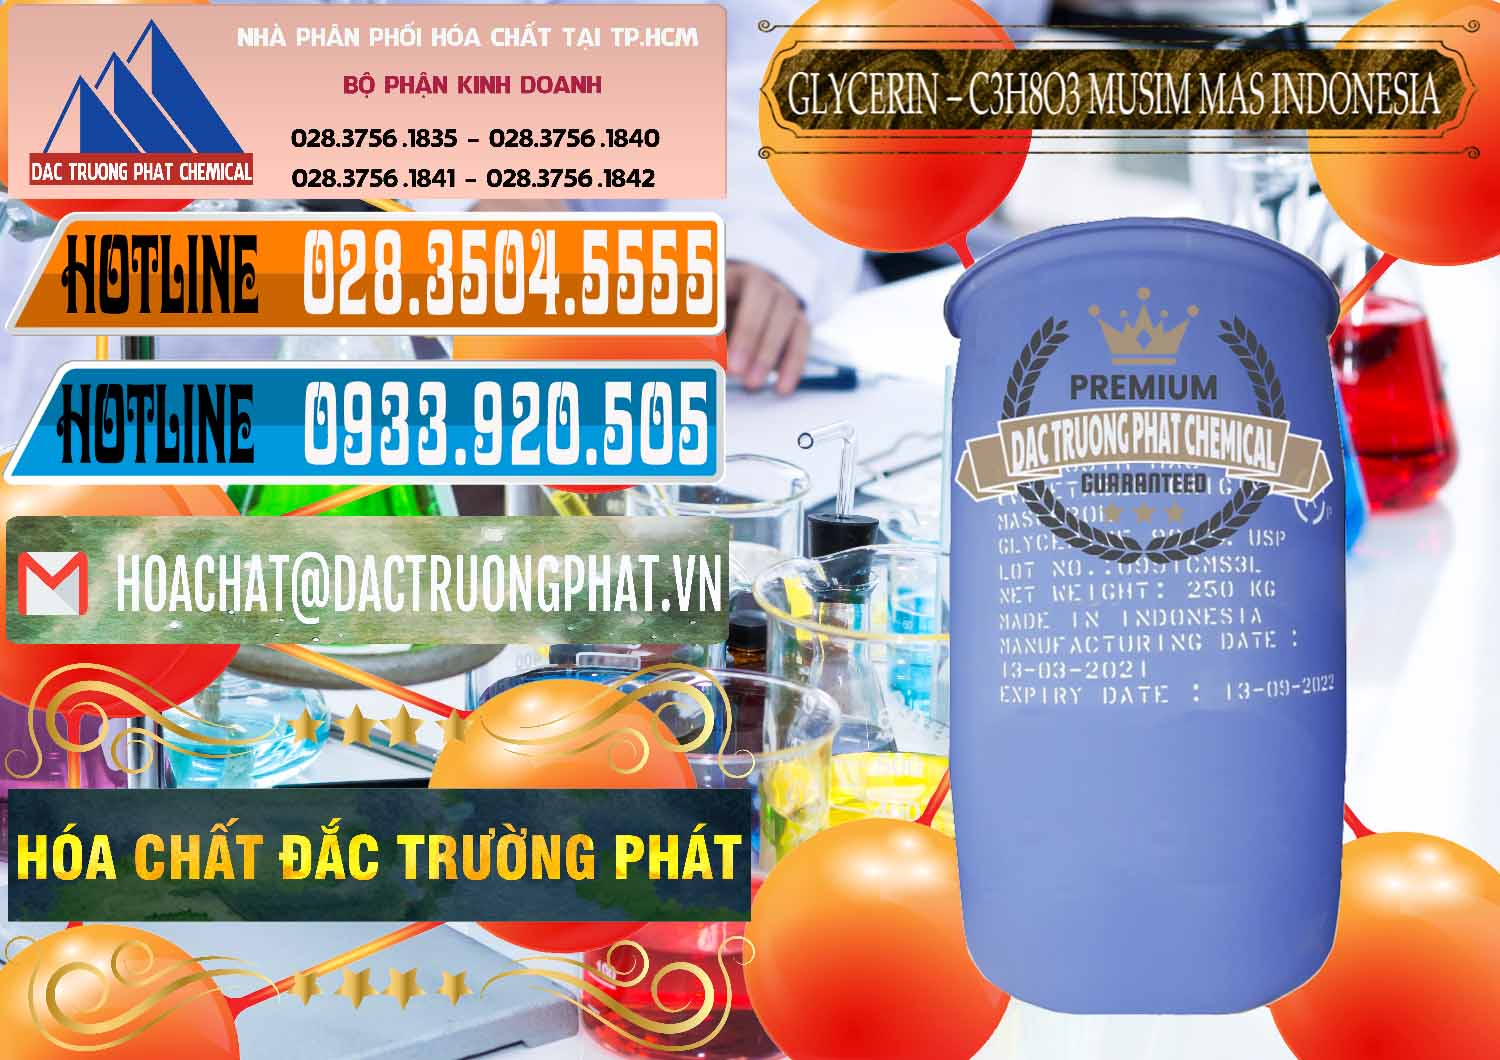 Nơi chuyên kinh doanh & bán Glycerin – C3H8O3 99.7% Musim Mas Indonesia - 0272 - Nhà nhập khẩu - phân phối hóa chất tại TP.HCM - stmp.net